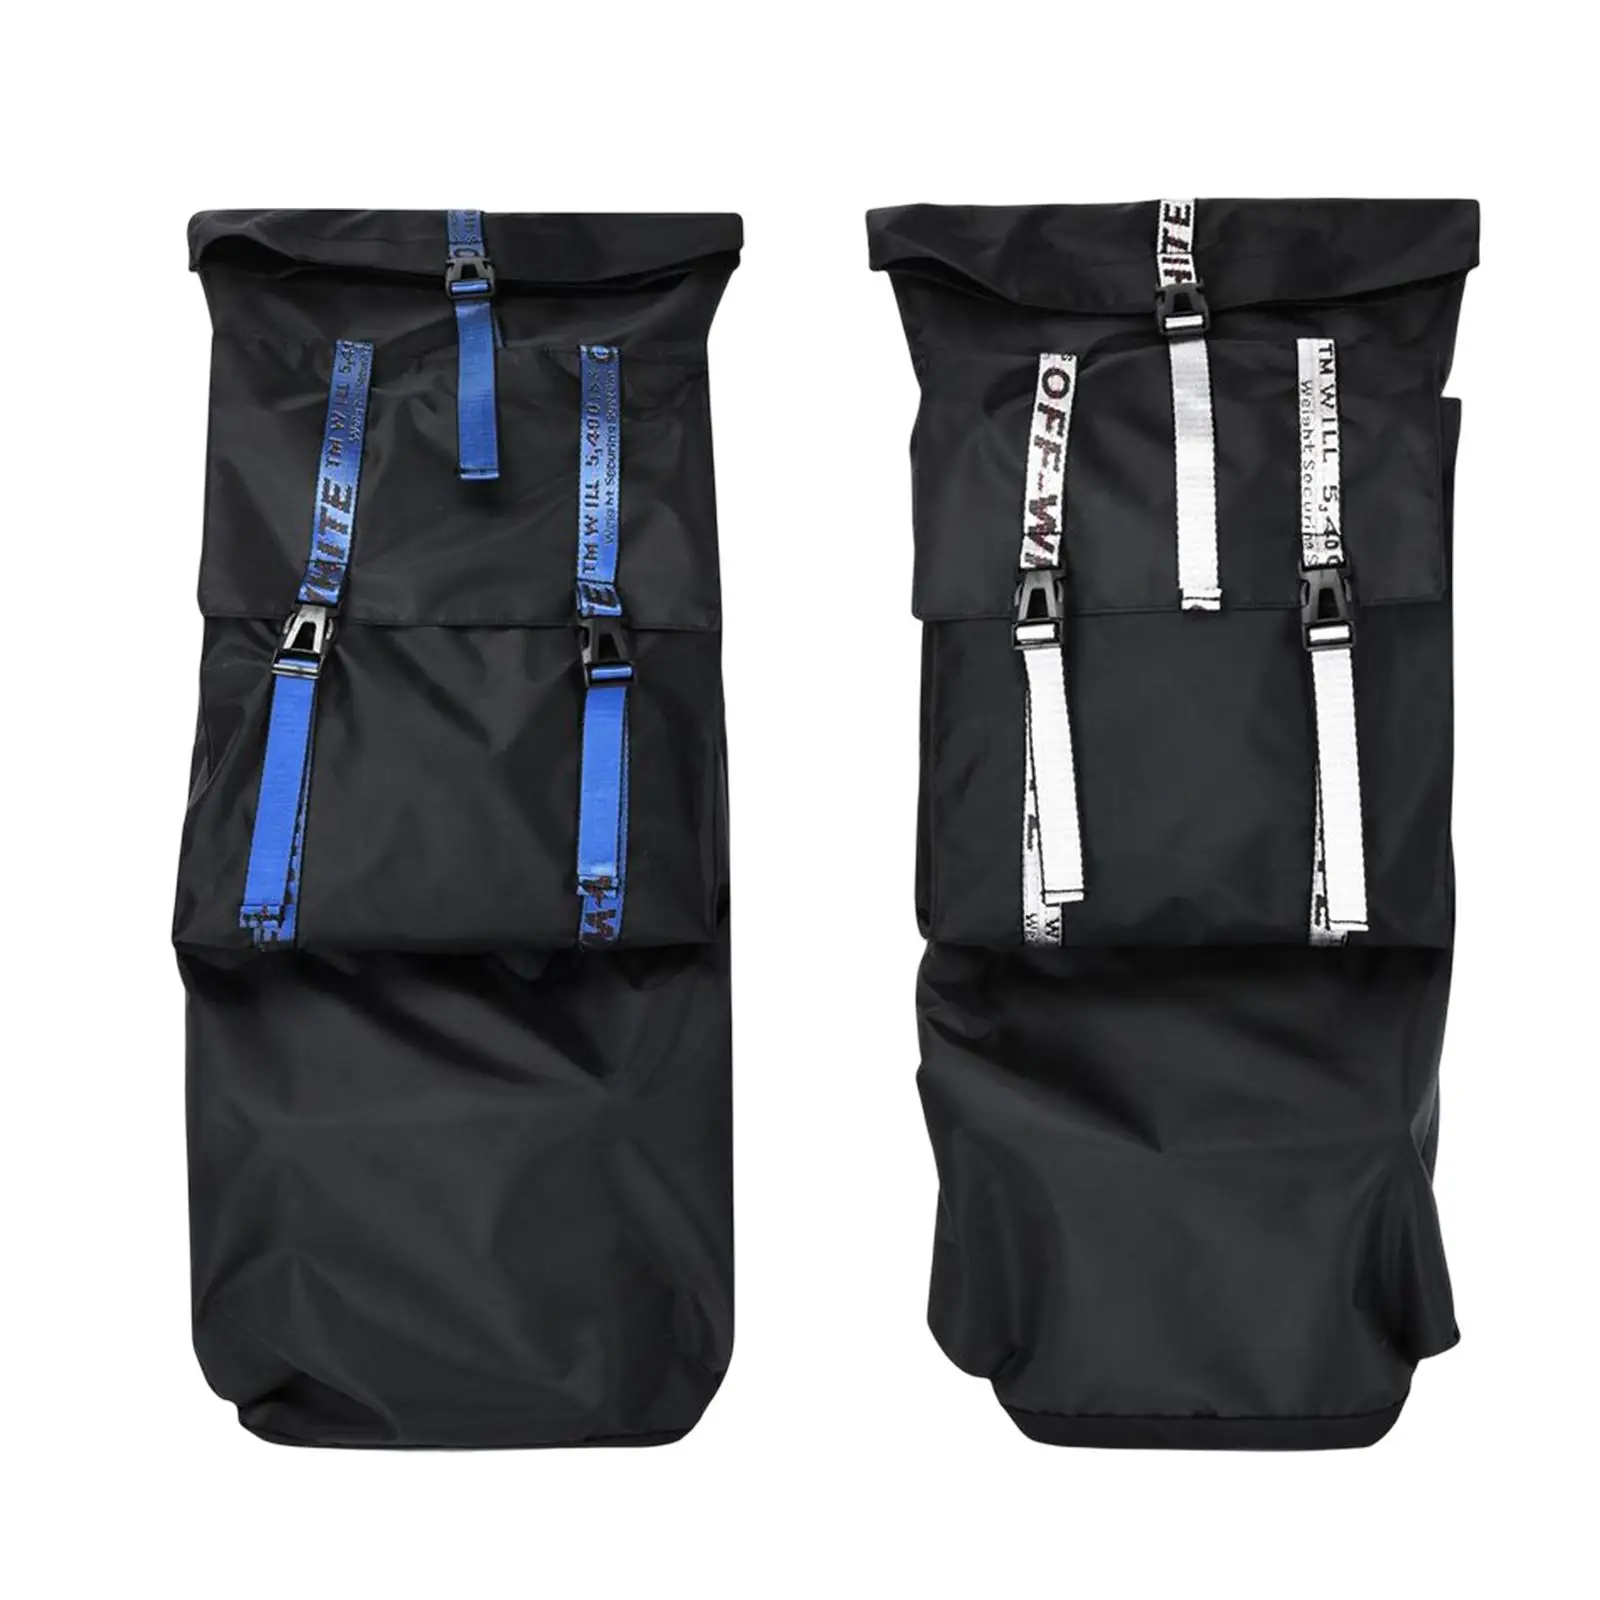 Oxford Cloth Skateboard Bag with Adjustable Shoulder Strap Folding Waterproof Skateboard Backpacks for Cruiser Unisex Beginners